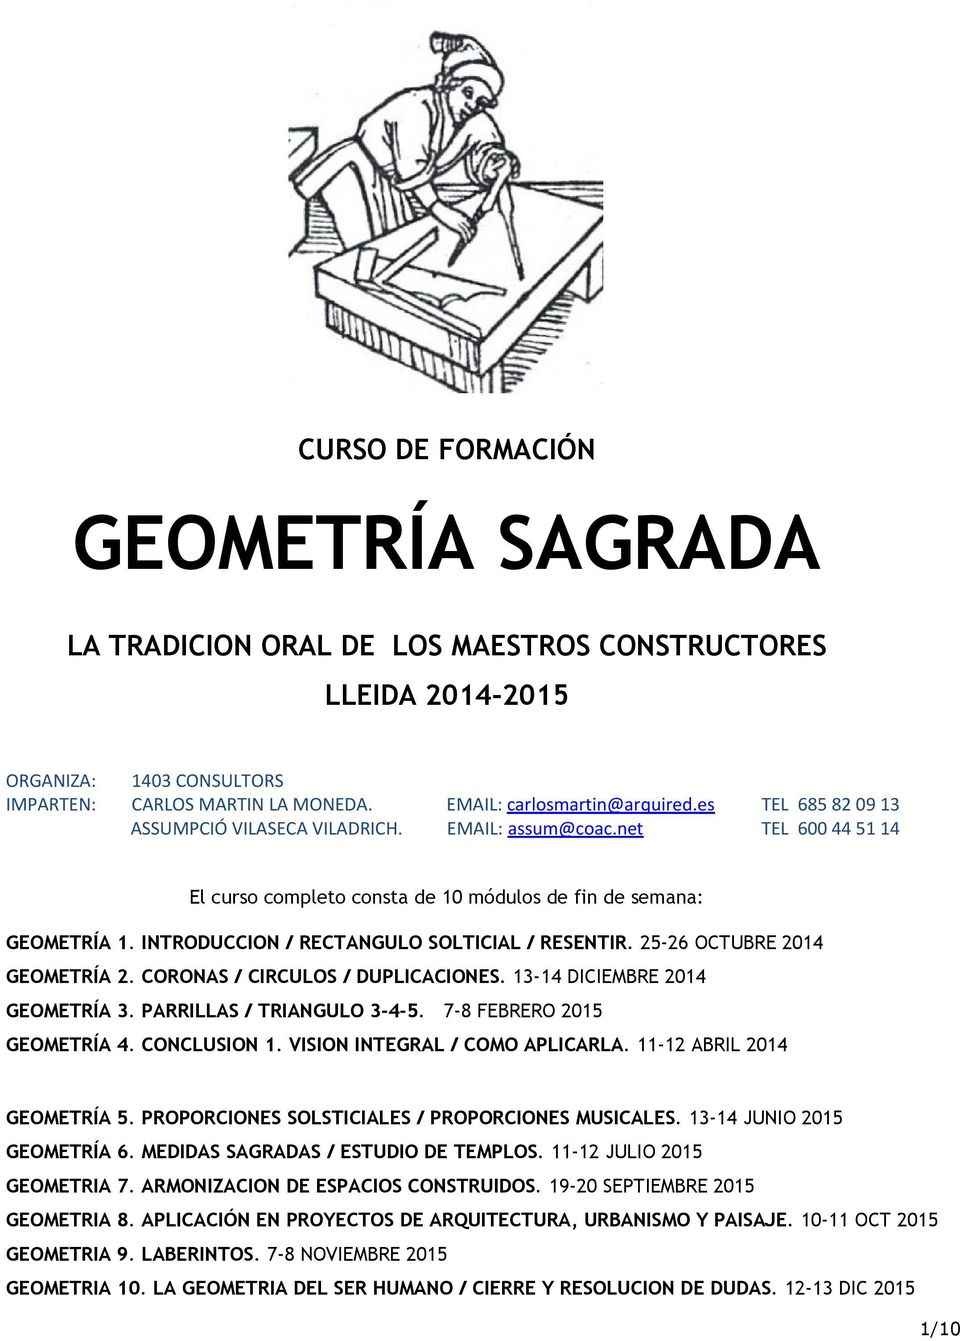 INTRODUCCION / RECTANGULO SOLTICIAL / RESENTIR. 25-26 OCTUBRE 2014 GEOMETRÍA 2. CORONAS / CIRCULOS / DUPLICACIONES. 13-14 DICIEMBRE 2014 GEOMETRÍA 3. PARRILLAS / TRIANGULO 3-4-5.